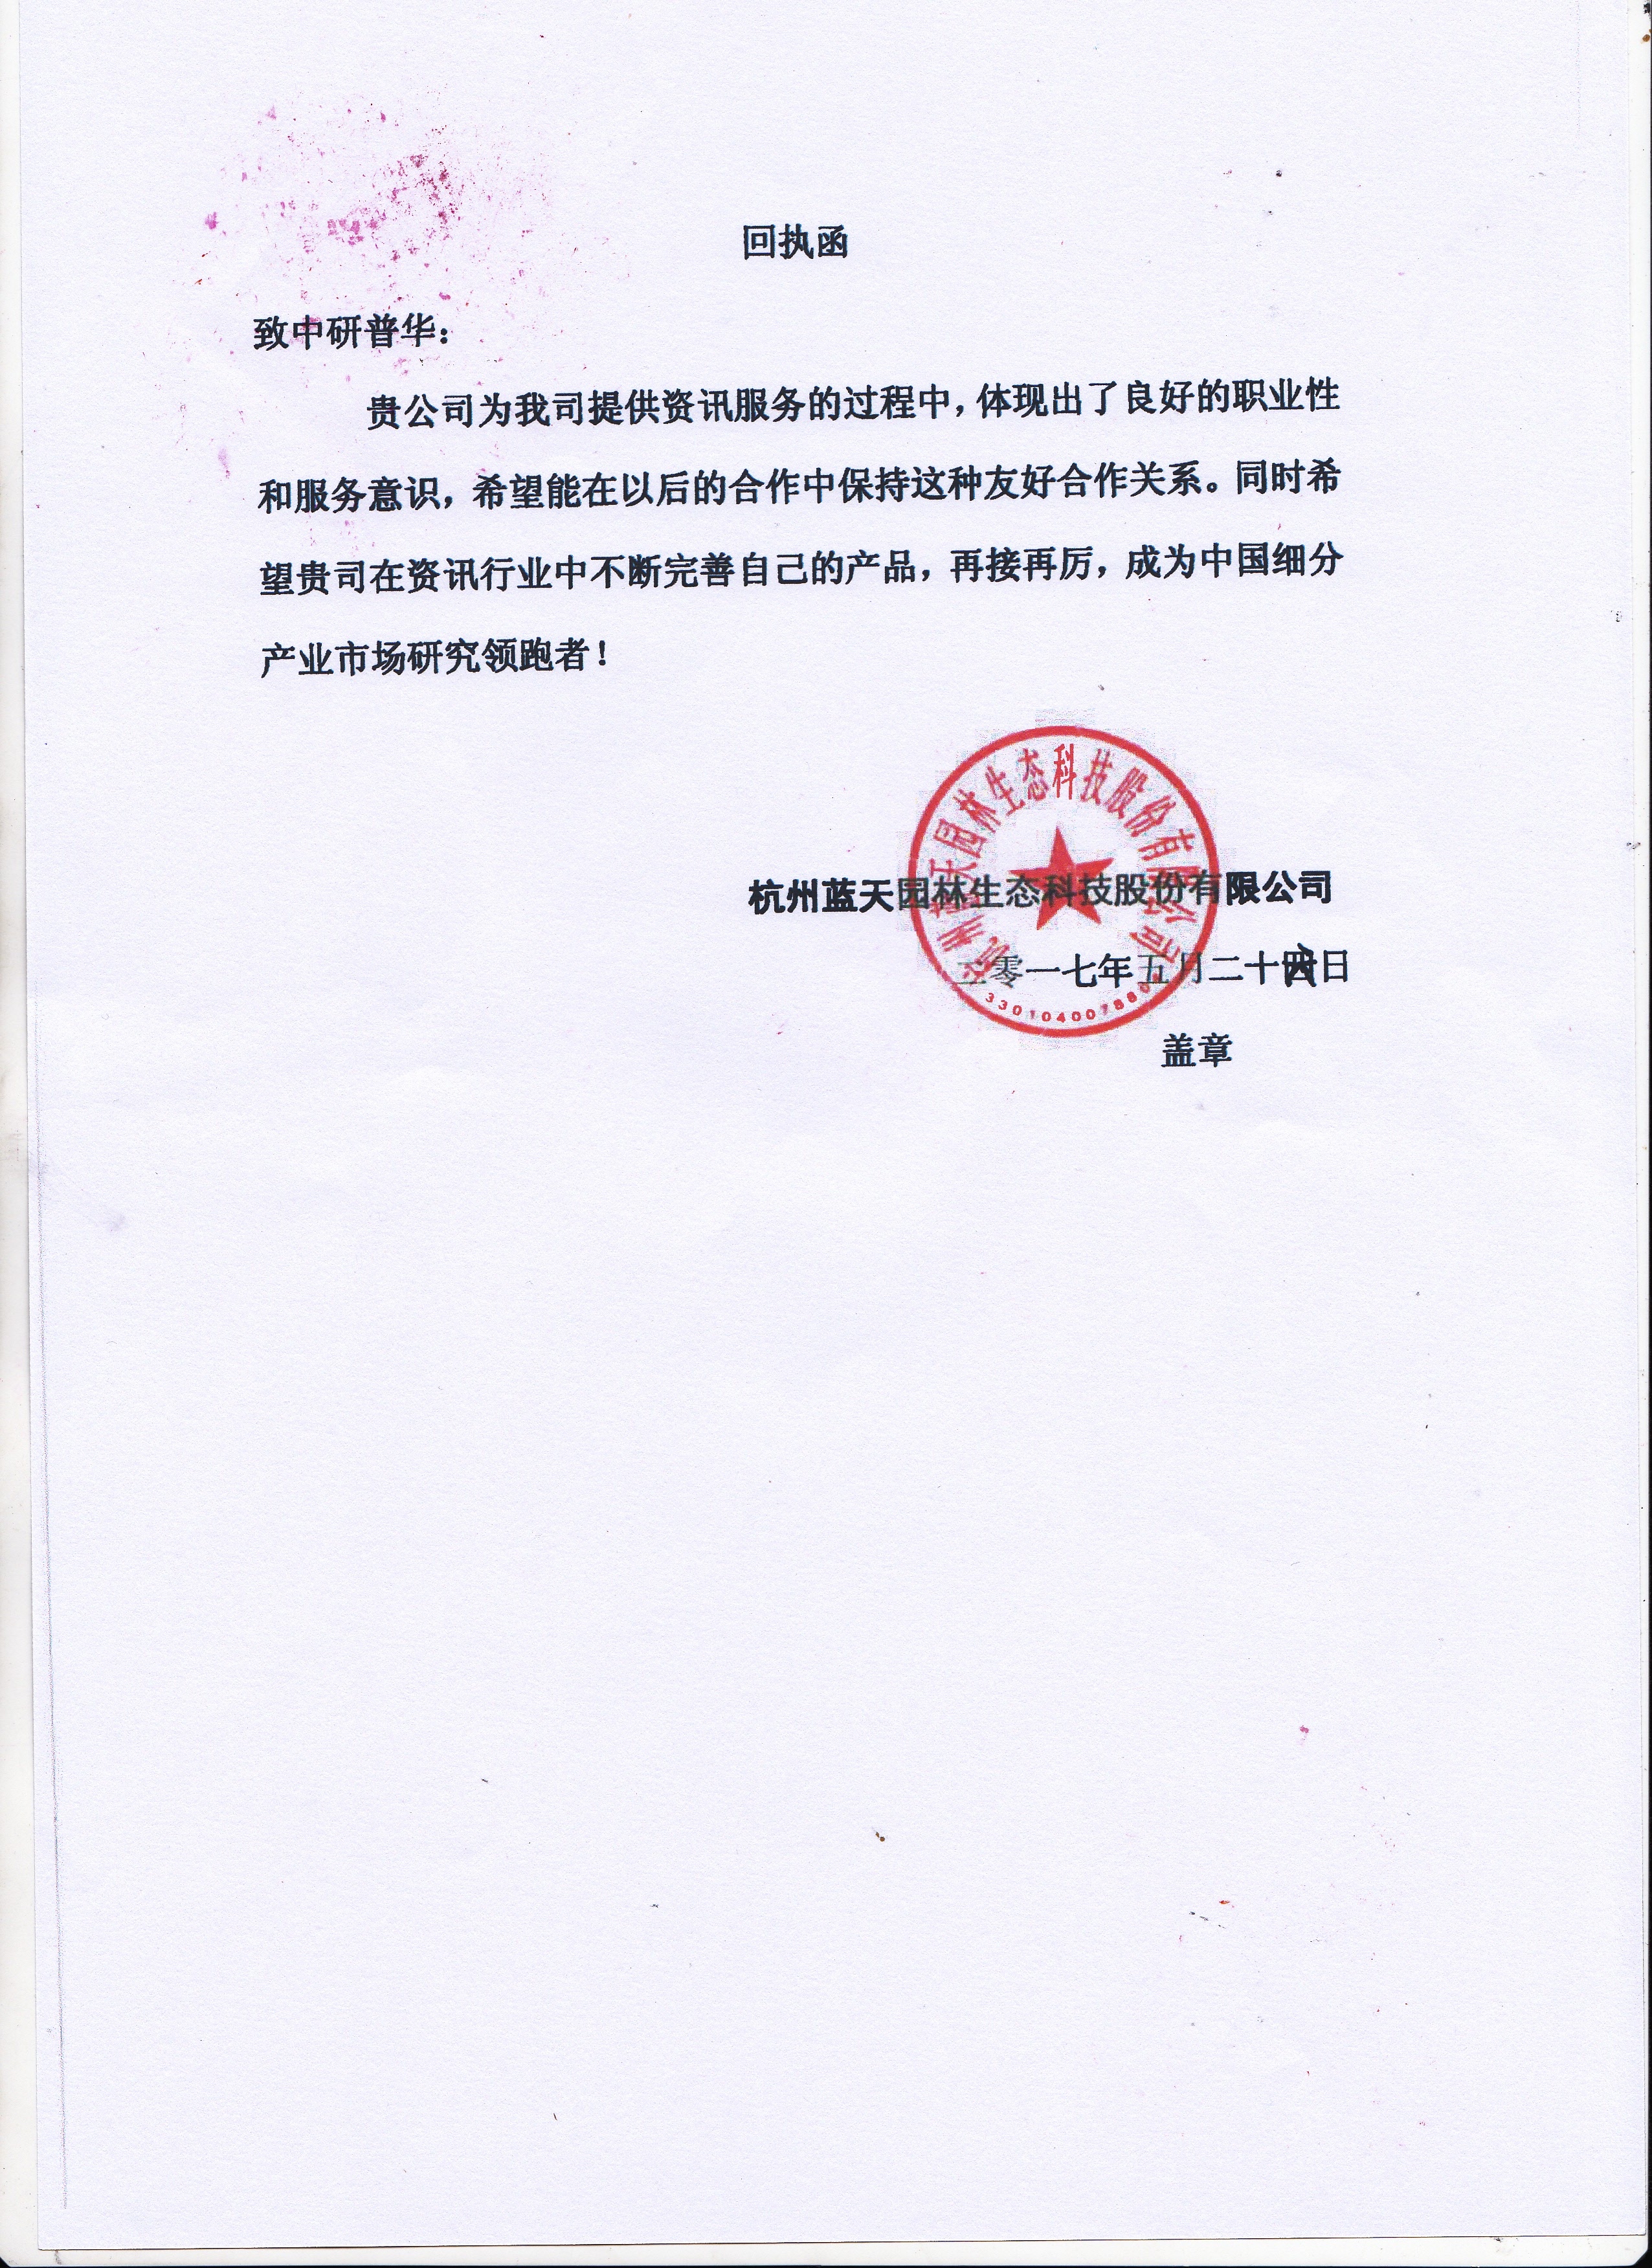 杭州蓝天园林生态科技股份有限公司